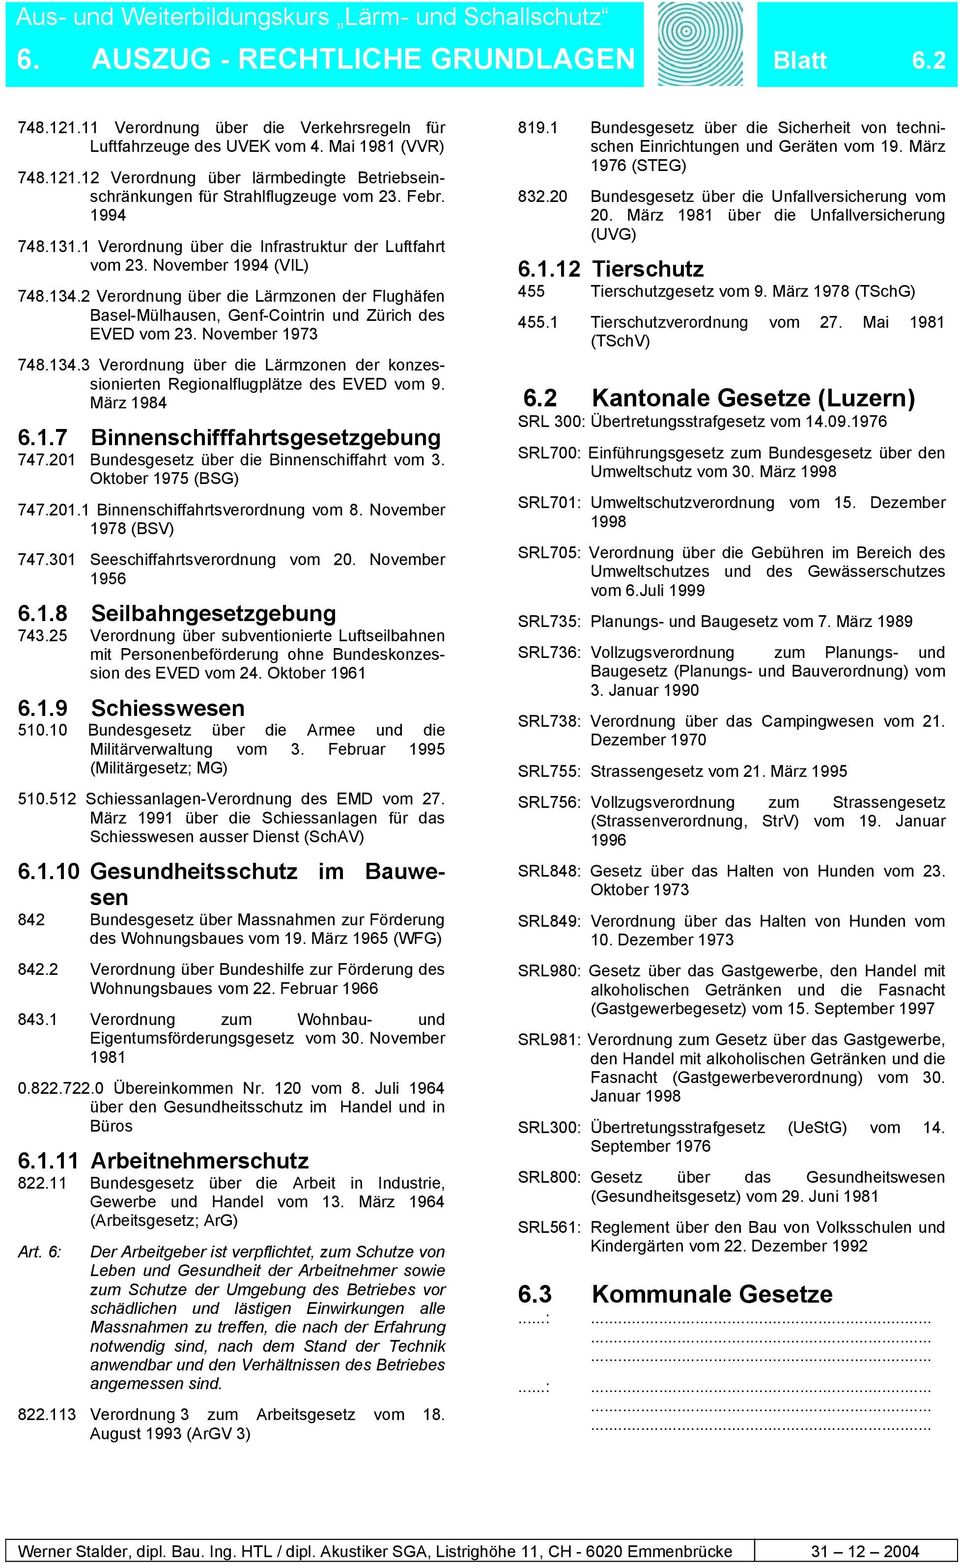 2 Verordnung über die Lärmzonen der Flughäfen Basel-Mülhausen, Genf-Cointrin und Zürich des EVED vom 23. November 1973 748.134.